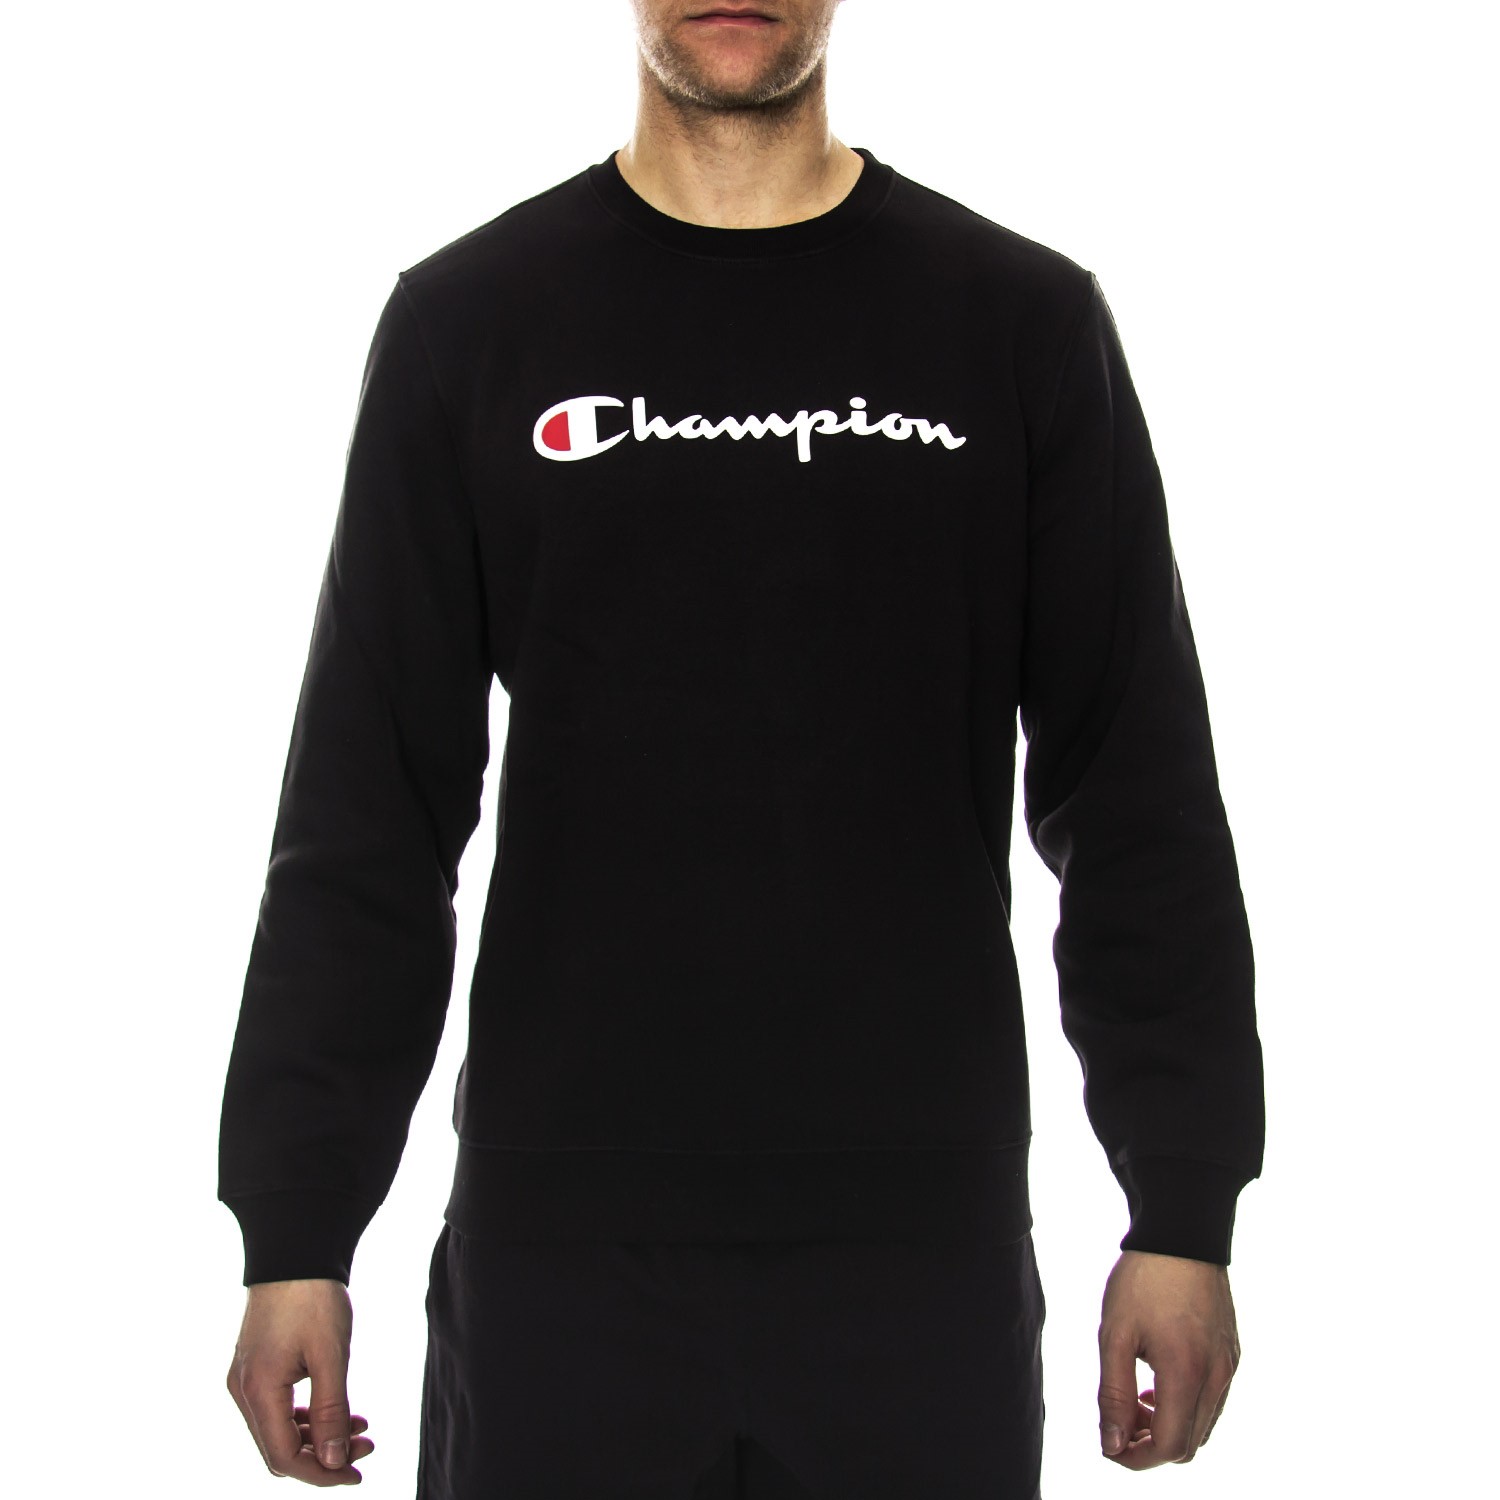 Champion Institutionals Crewneck Sweatshirt